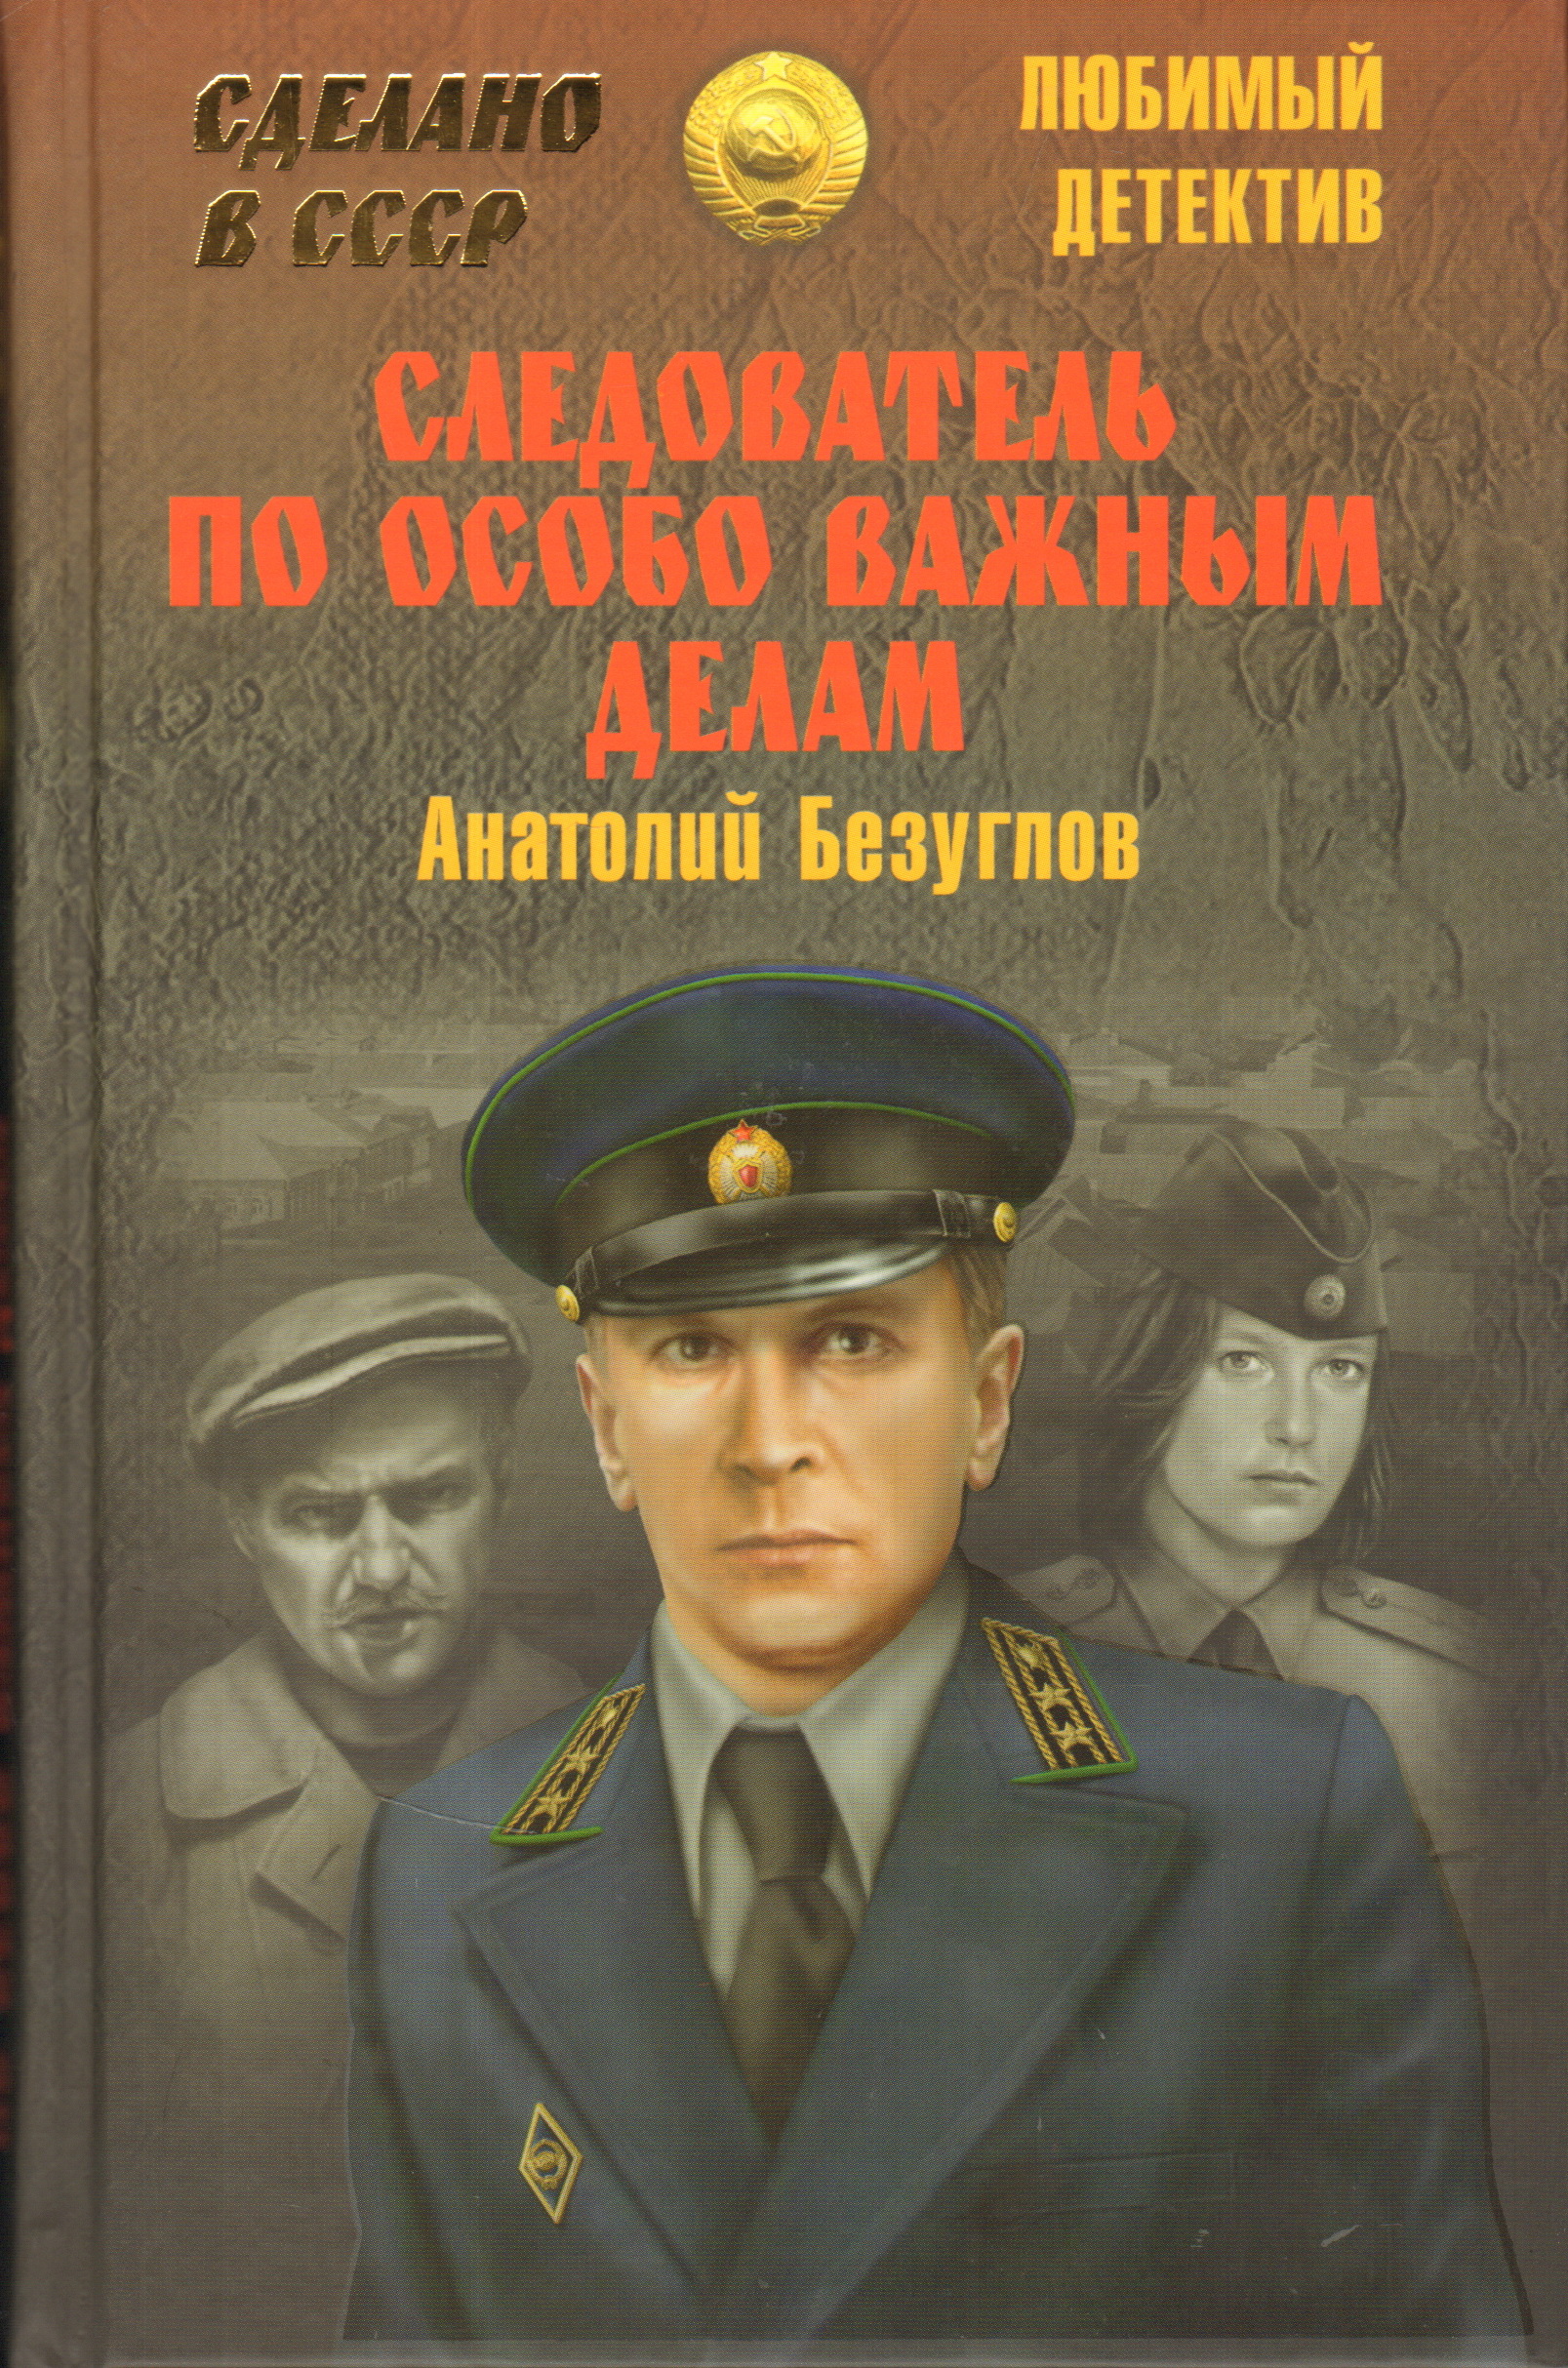 Слушать аудио книги детективы. Советские детективы книги. Детективы про милицию.